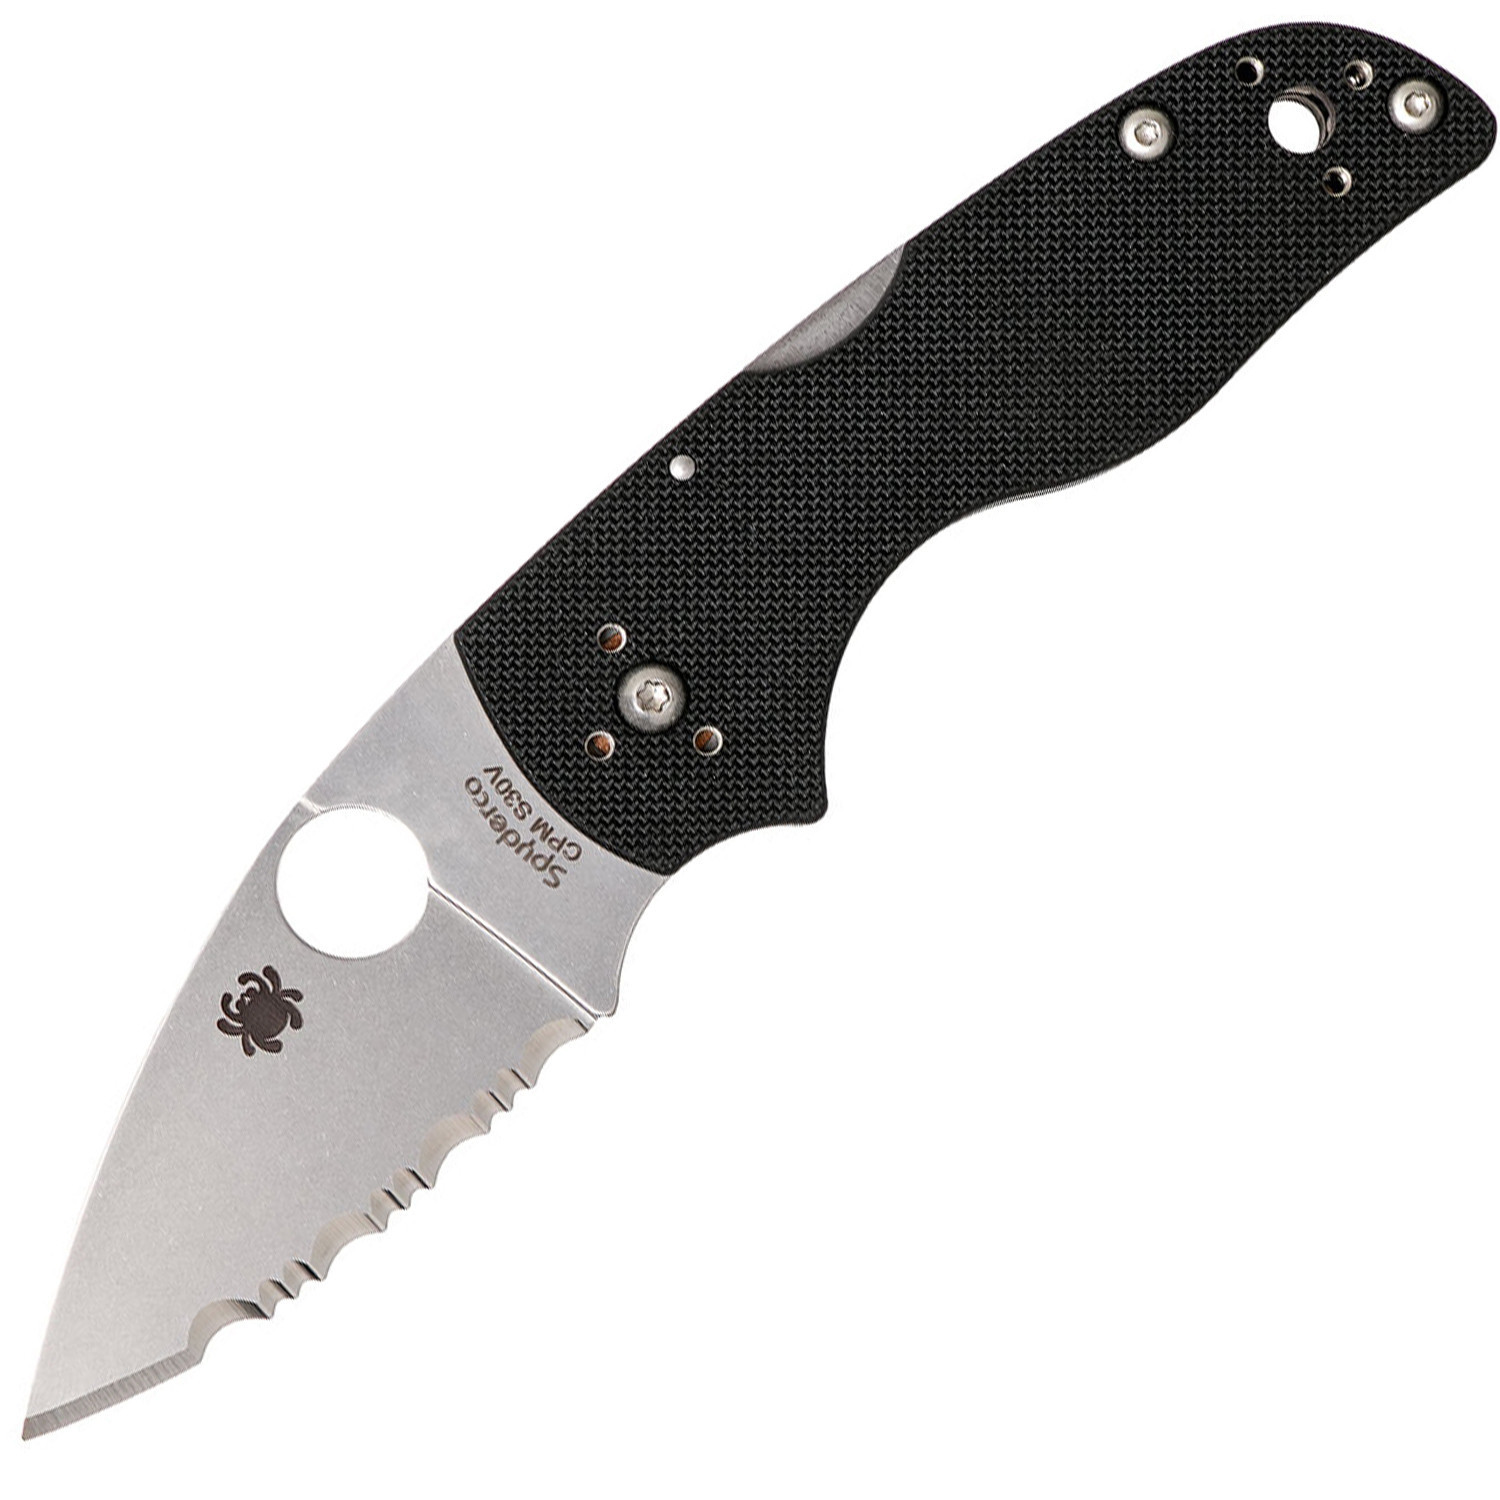 Нож складной Lil' Native MID - Spyderco 230MBGS, сталь Crucible CPM® S30V™ Satin Serrated, рукоять стеклотекстолит G10, чёрный